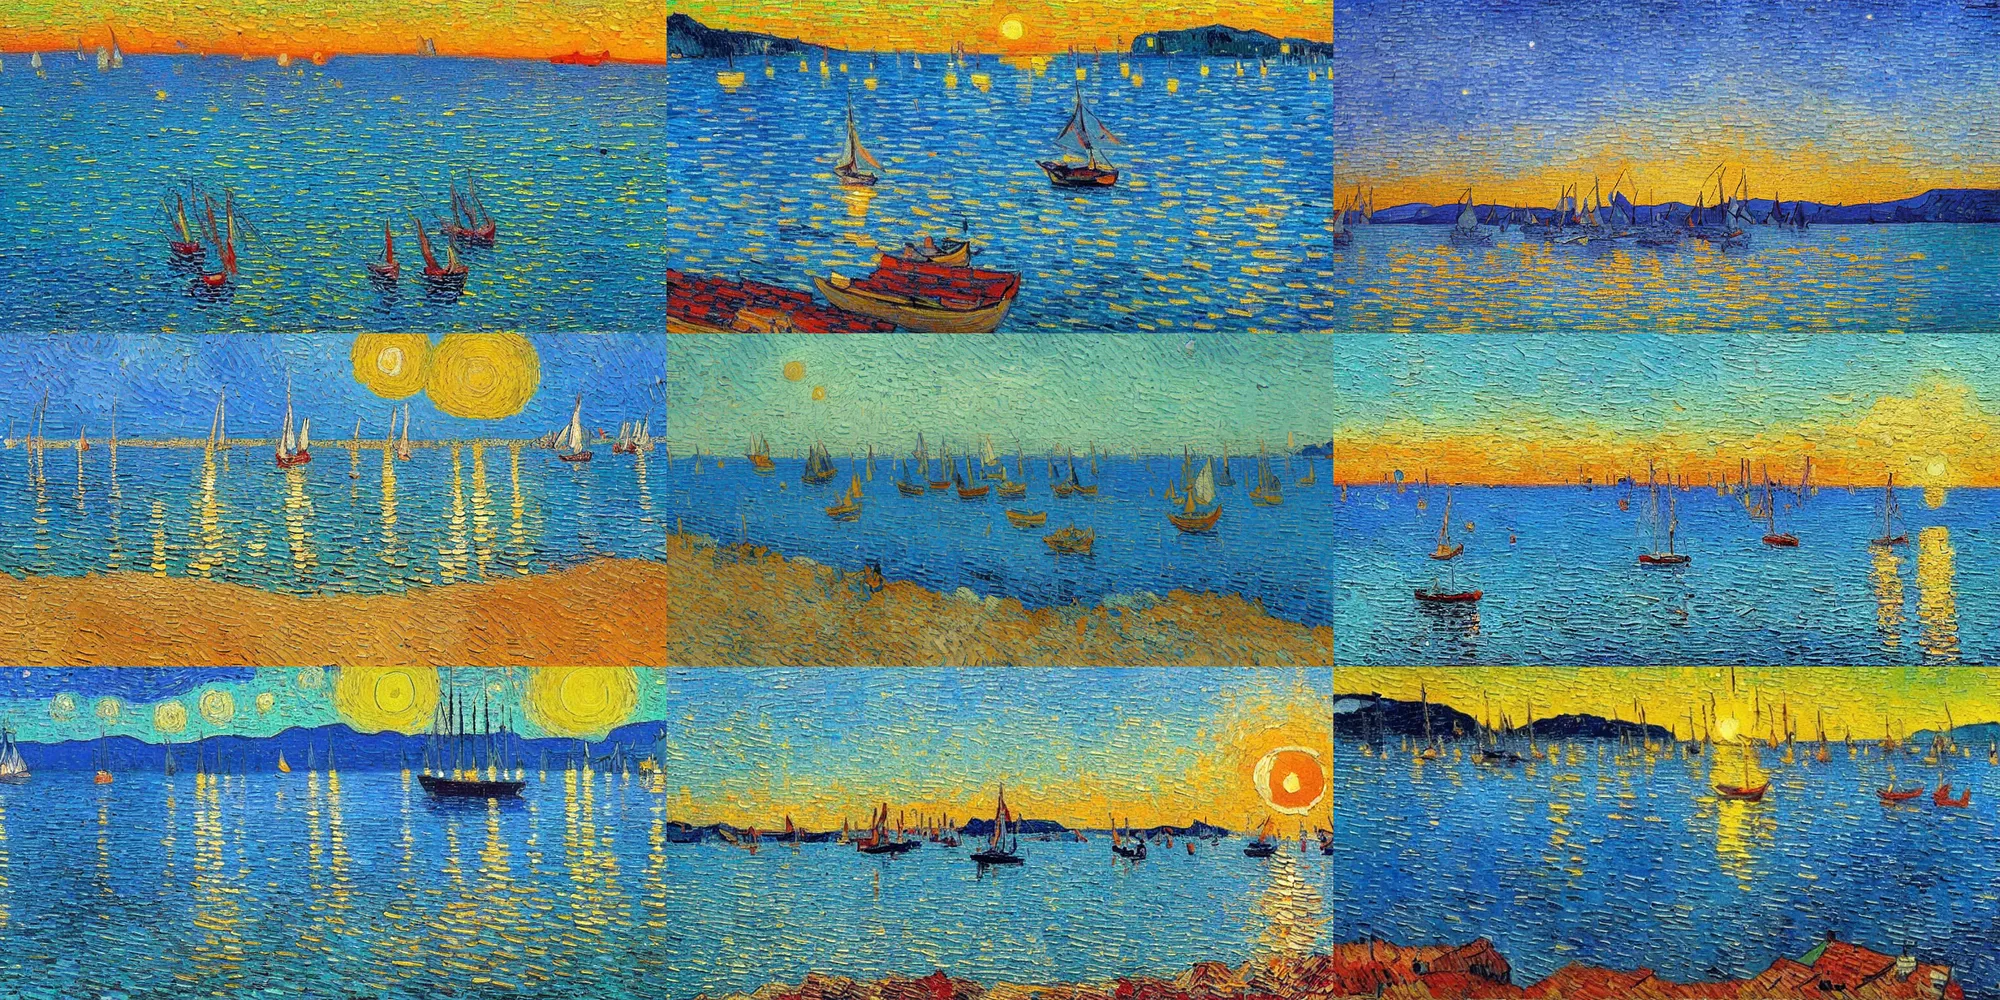 Prompt: Croatian coastline, sunrise, sailboats, Van Gogh painting